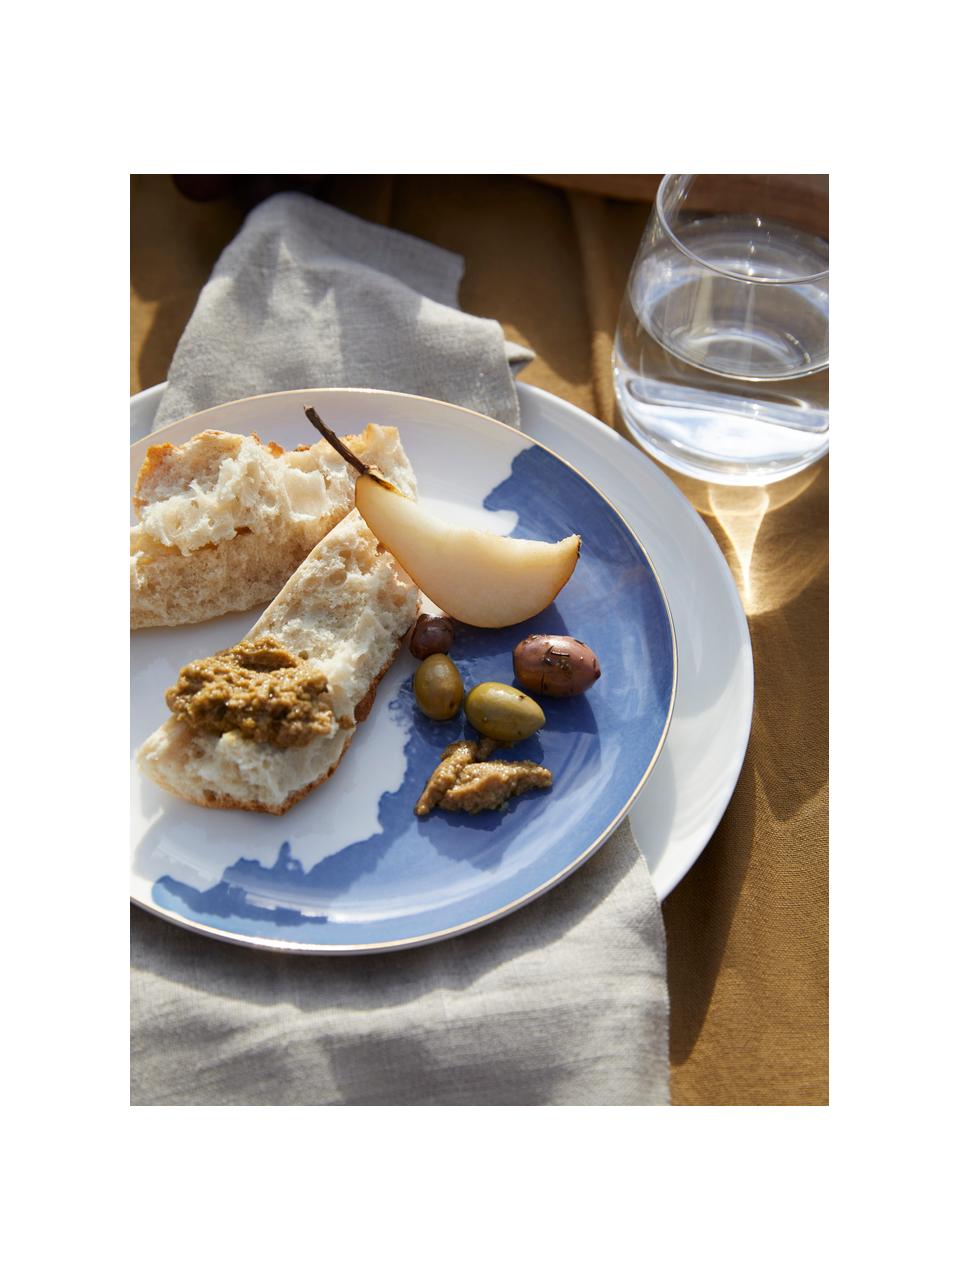 Porzellan Frühstücksteller Rosie mit abstraktem Muster, 2 Stück, Porzellan, Off White, Blau, Ø 21 x H 2 cm